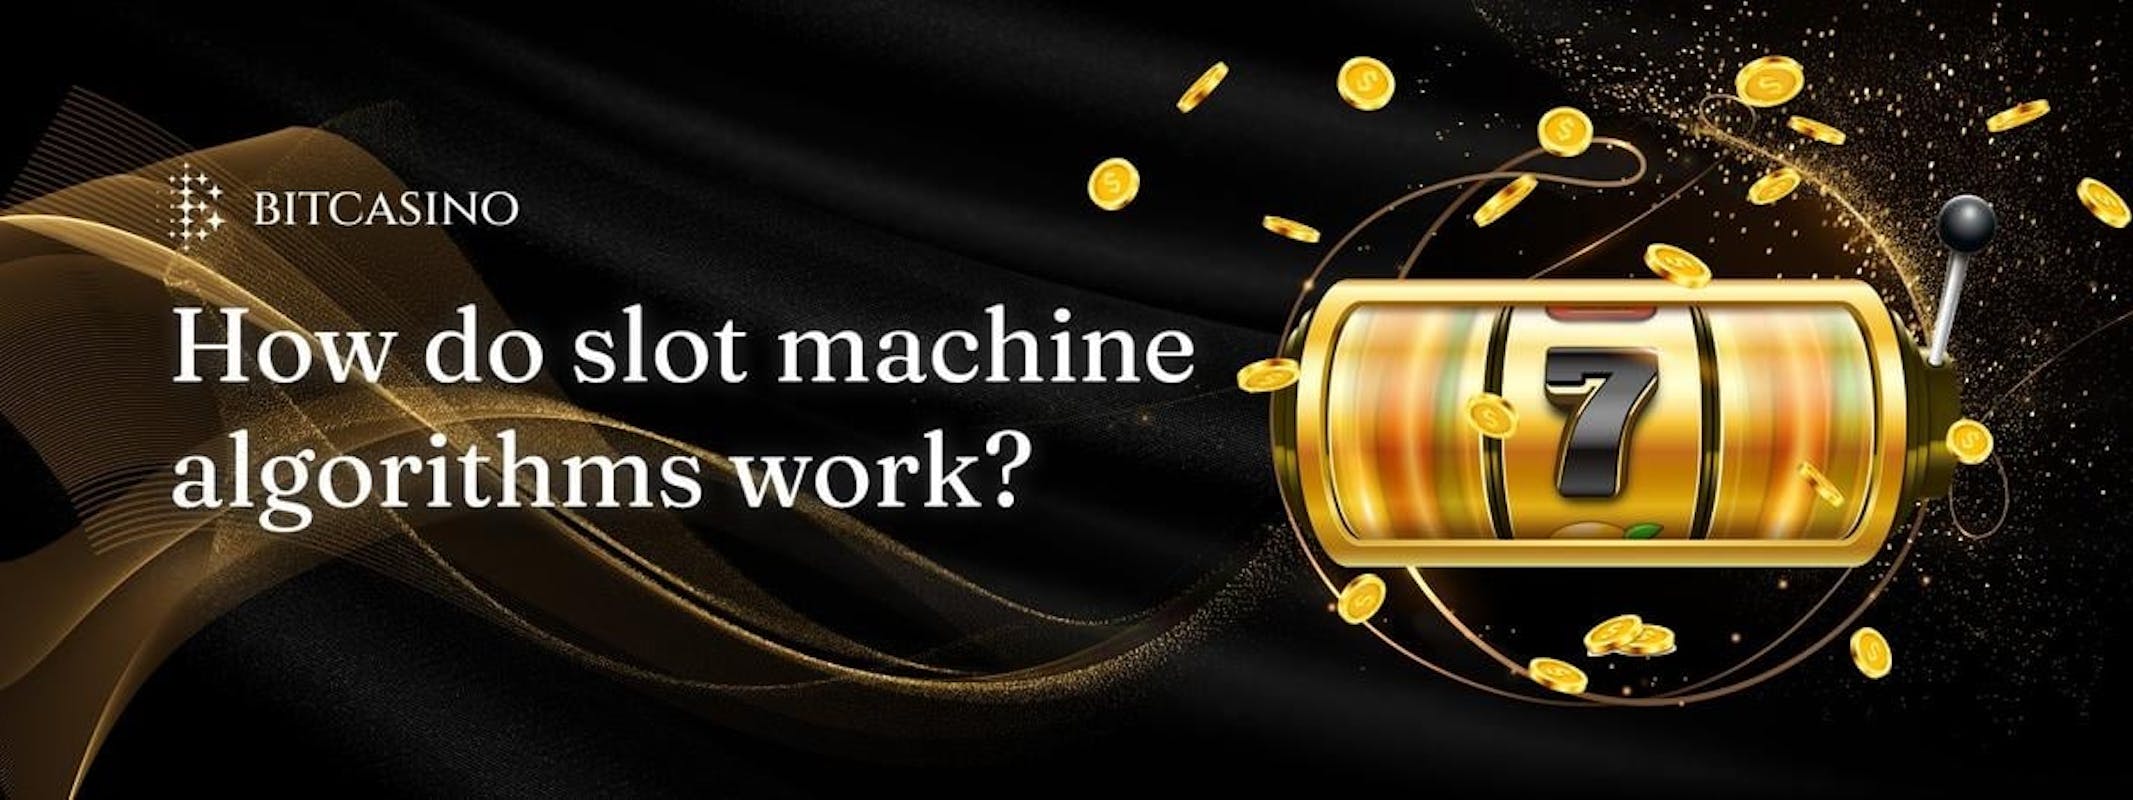 Slot machine algorithm: Can you hack it?